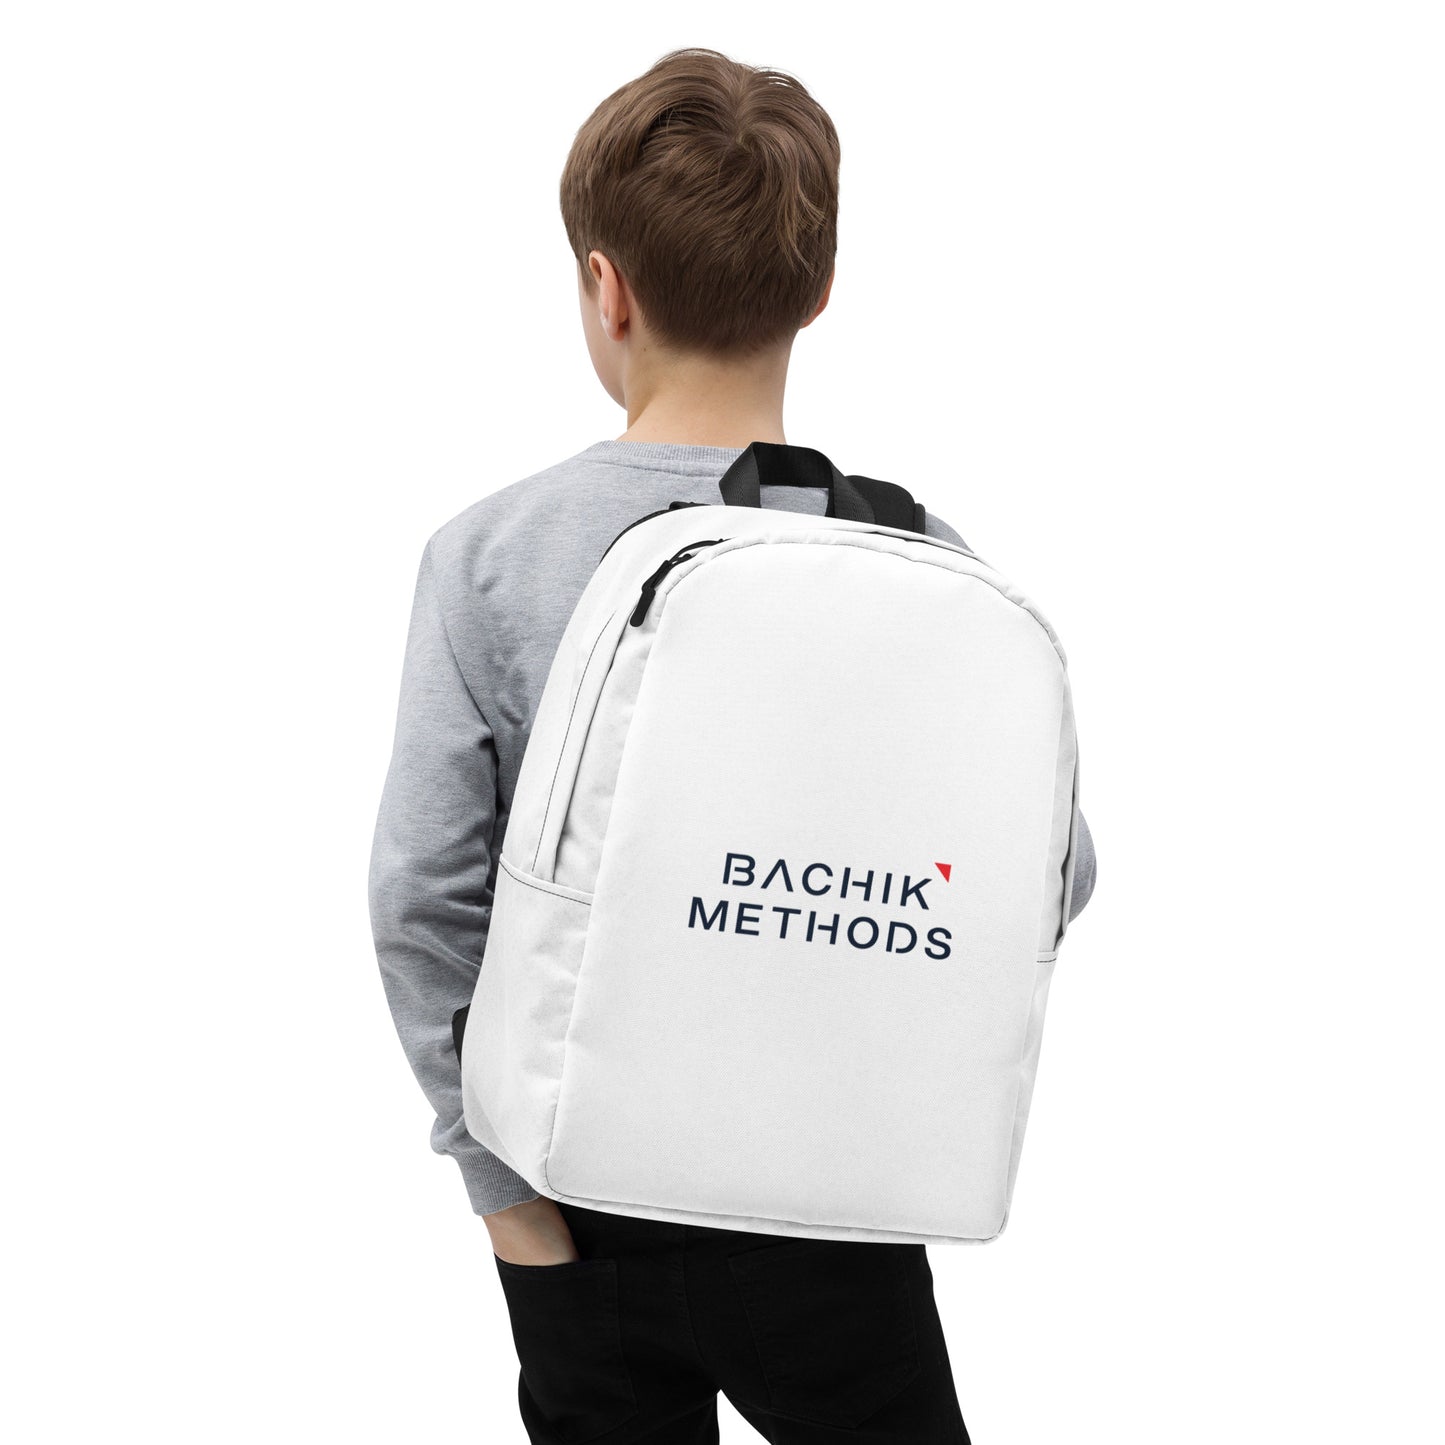 Bachik Methods Backpack